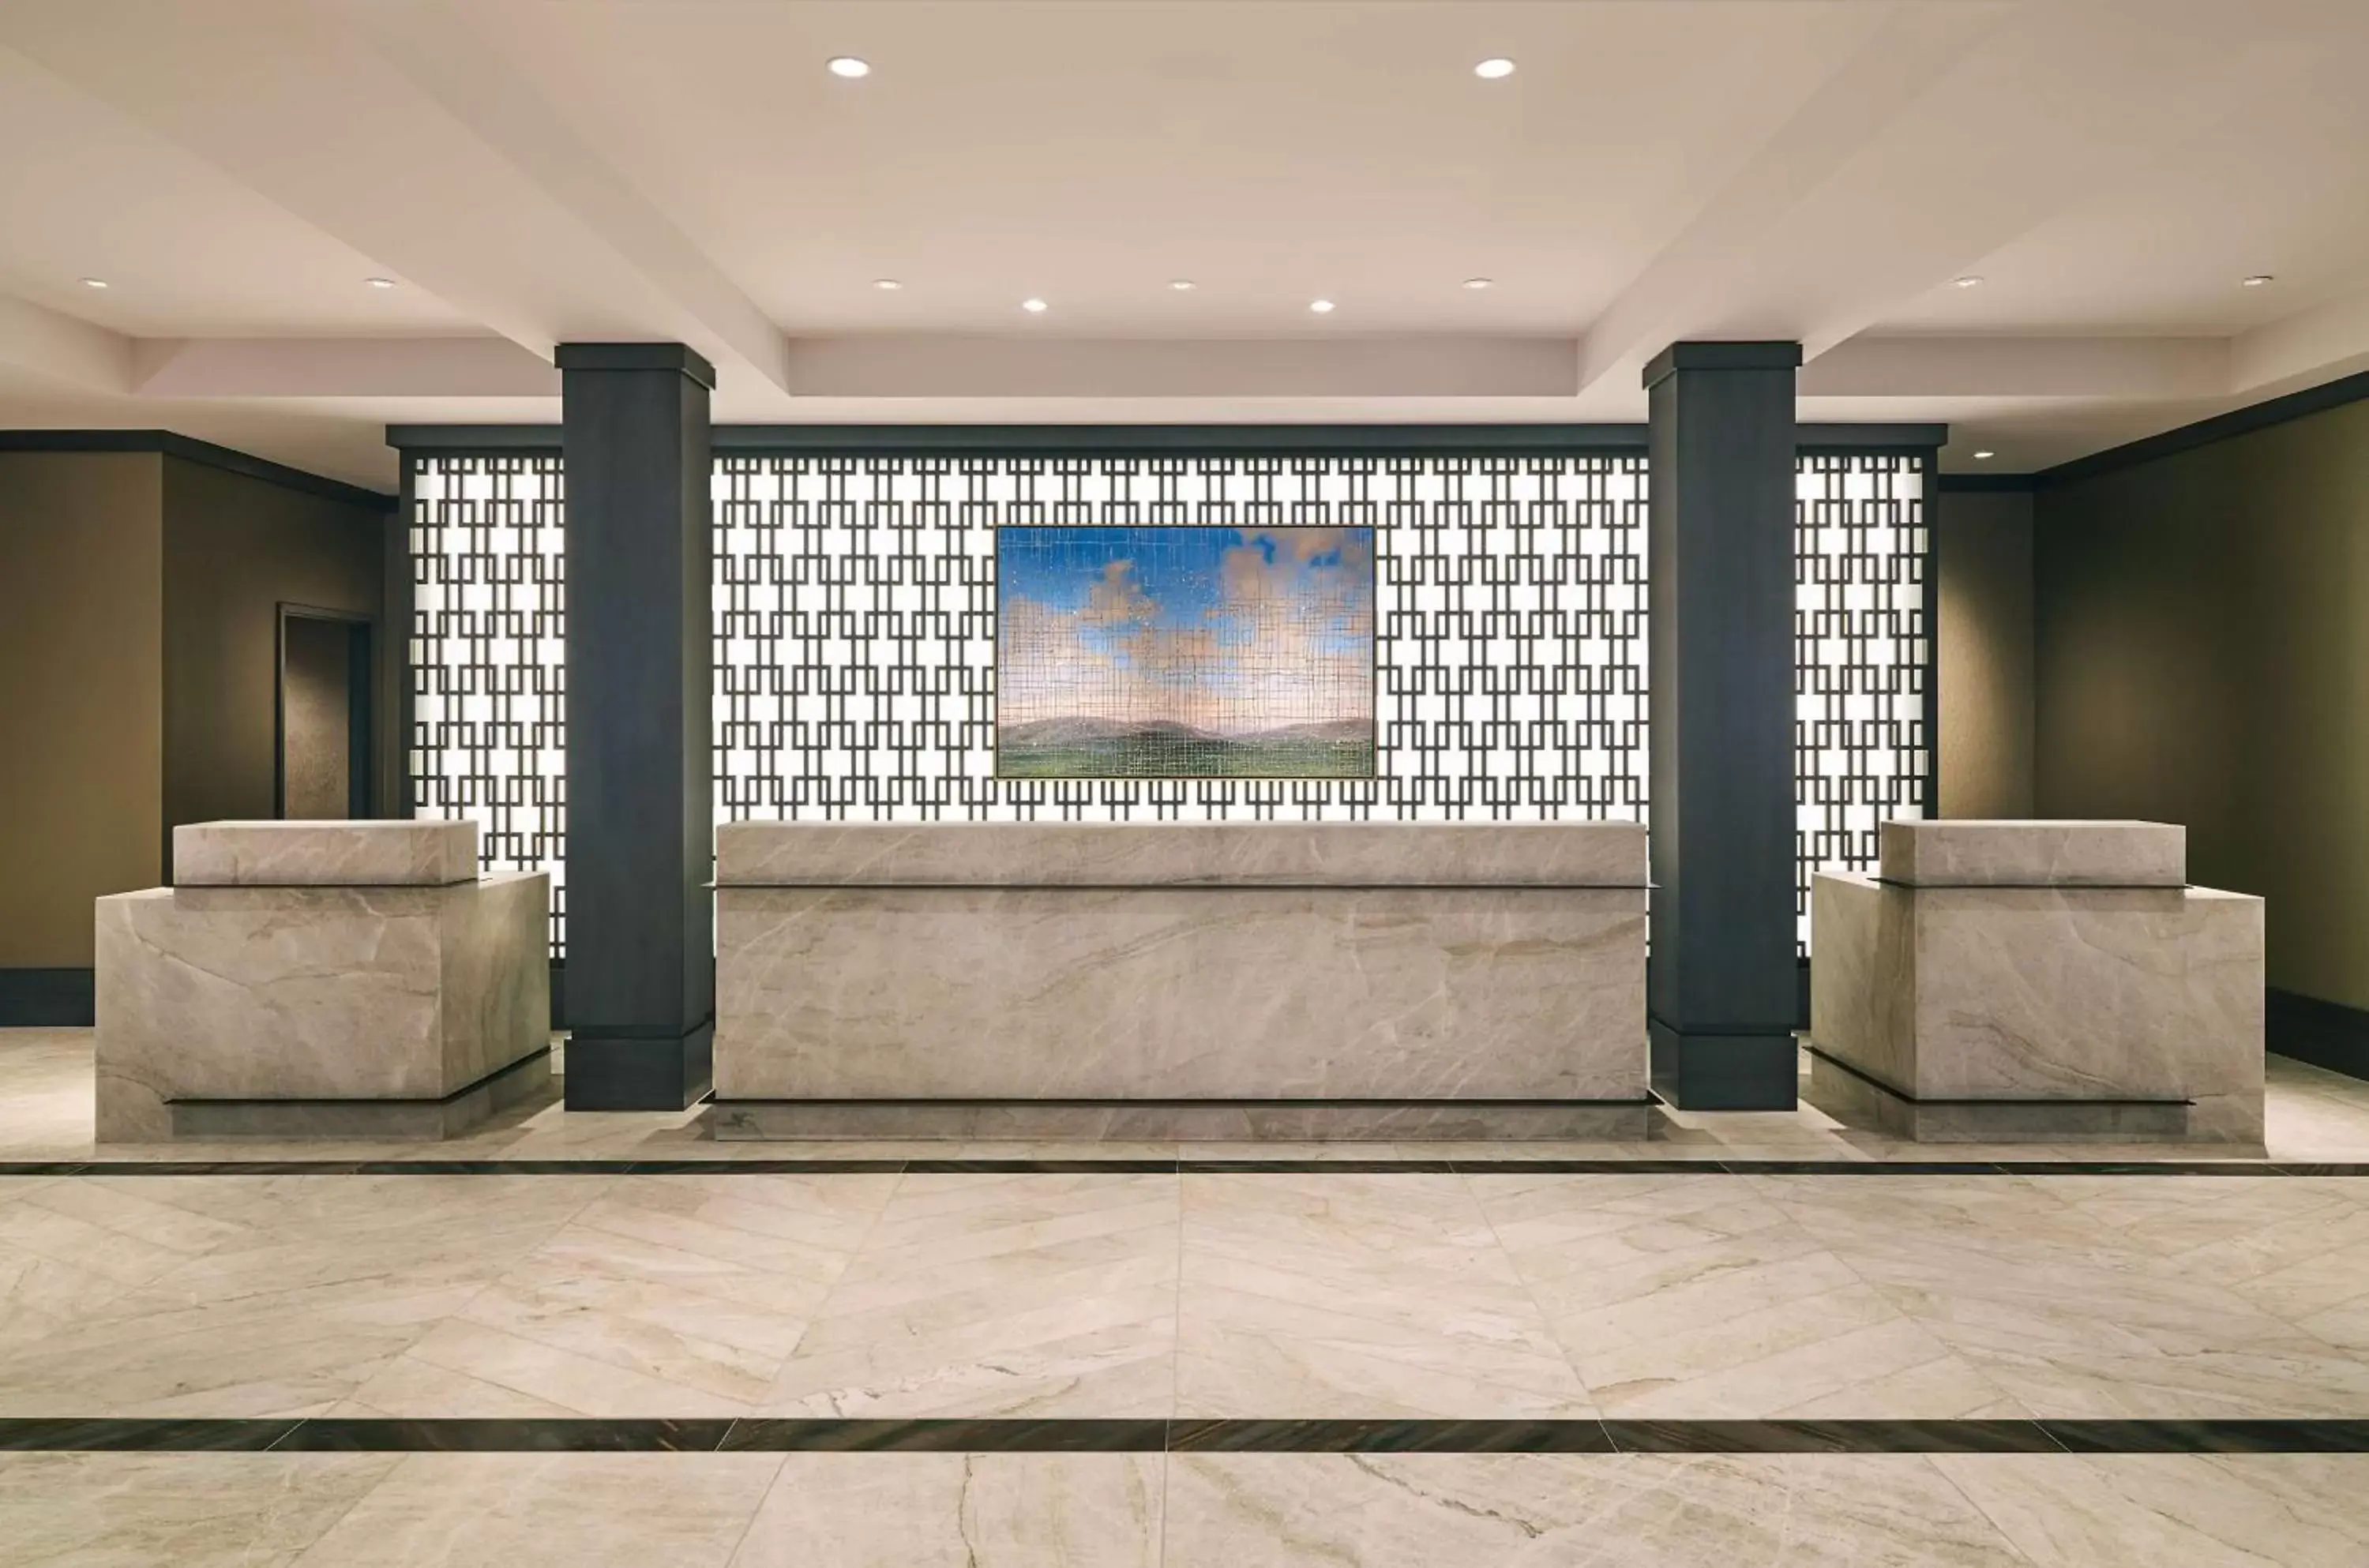 Lobby or reception, Lobby/Reception in Grand Hyatt Vail